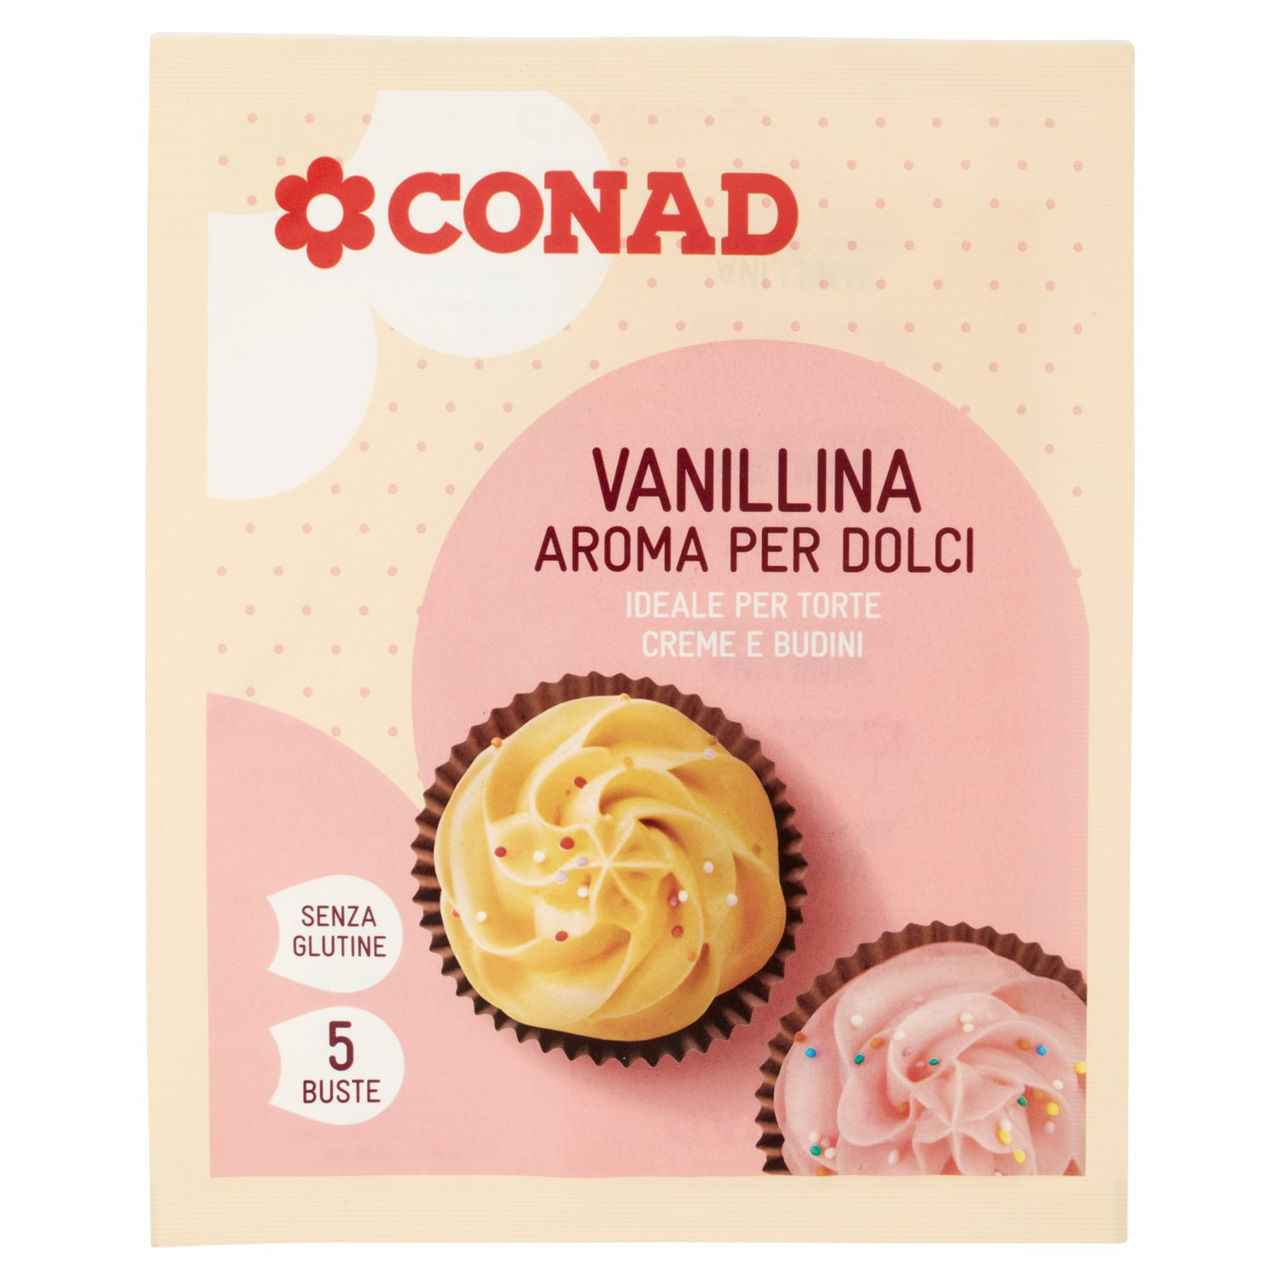 Vanillina aroma per dolci 5 x 0,4 g Conad